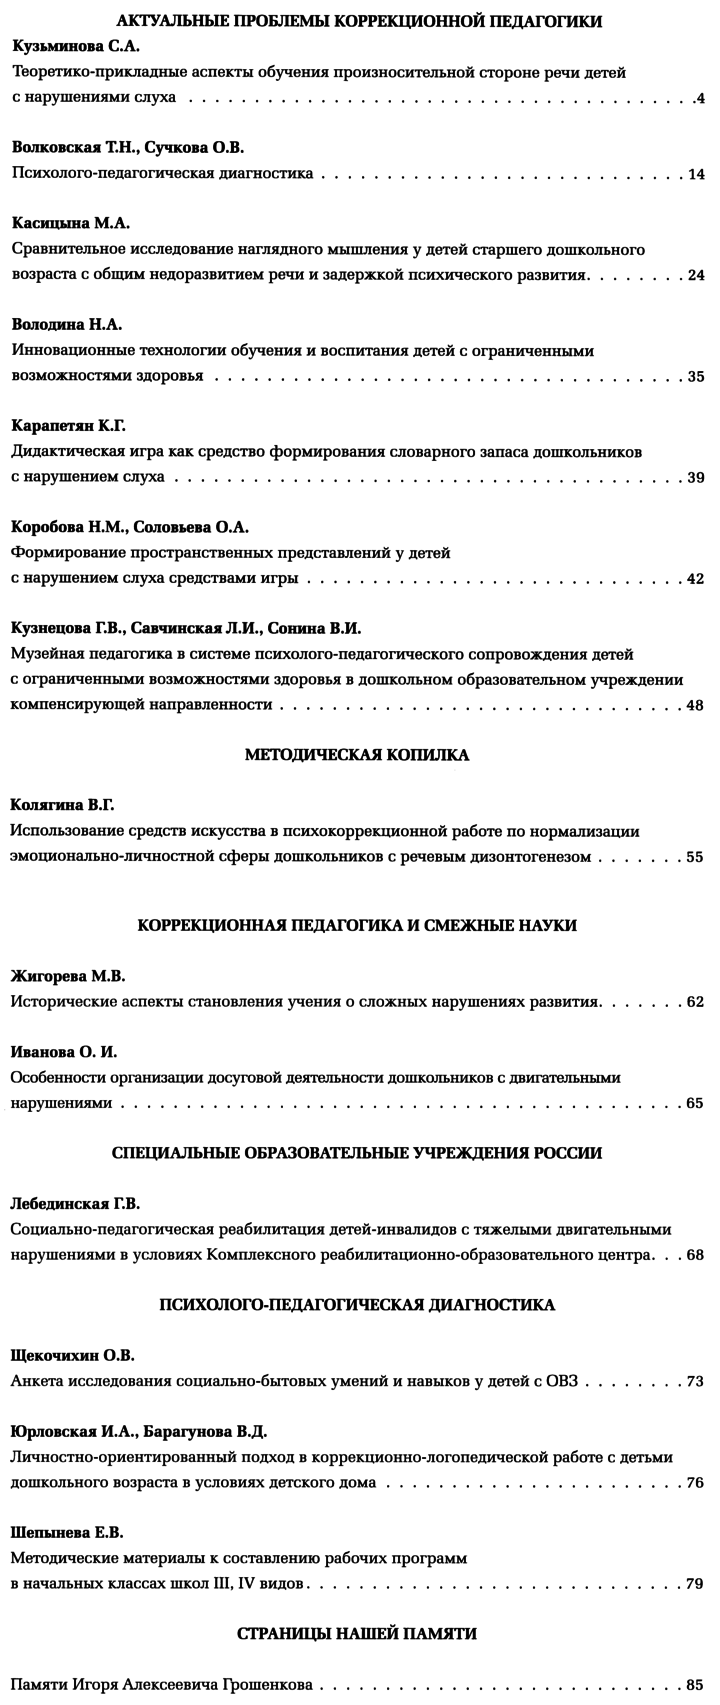 Коррекционная педагогика 2014-03.png